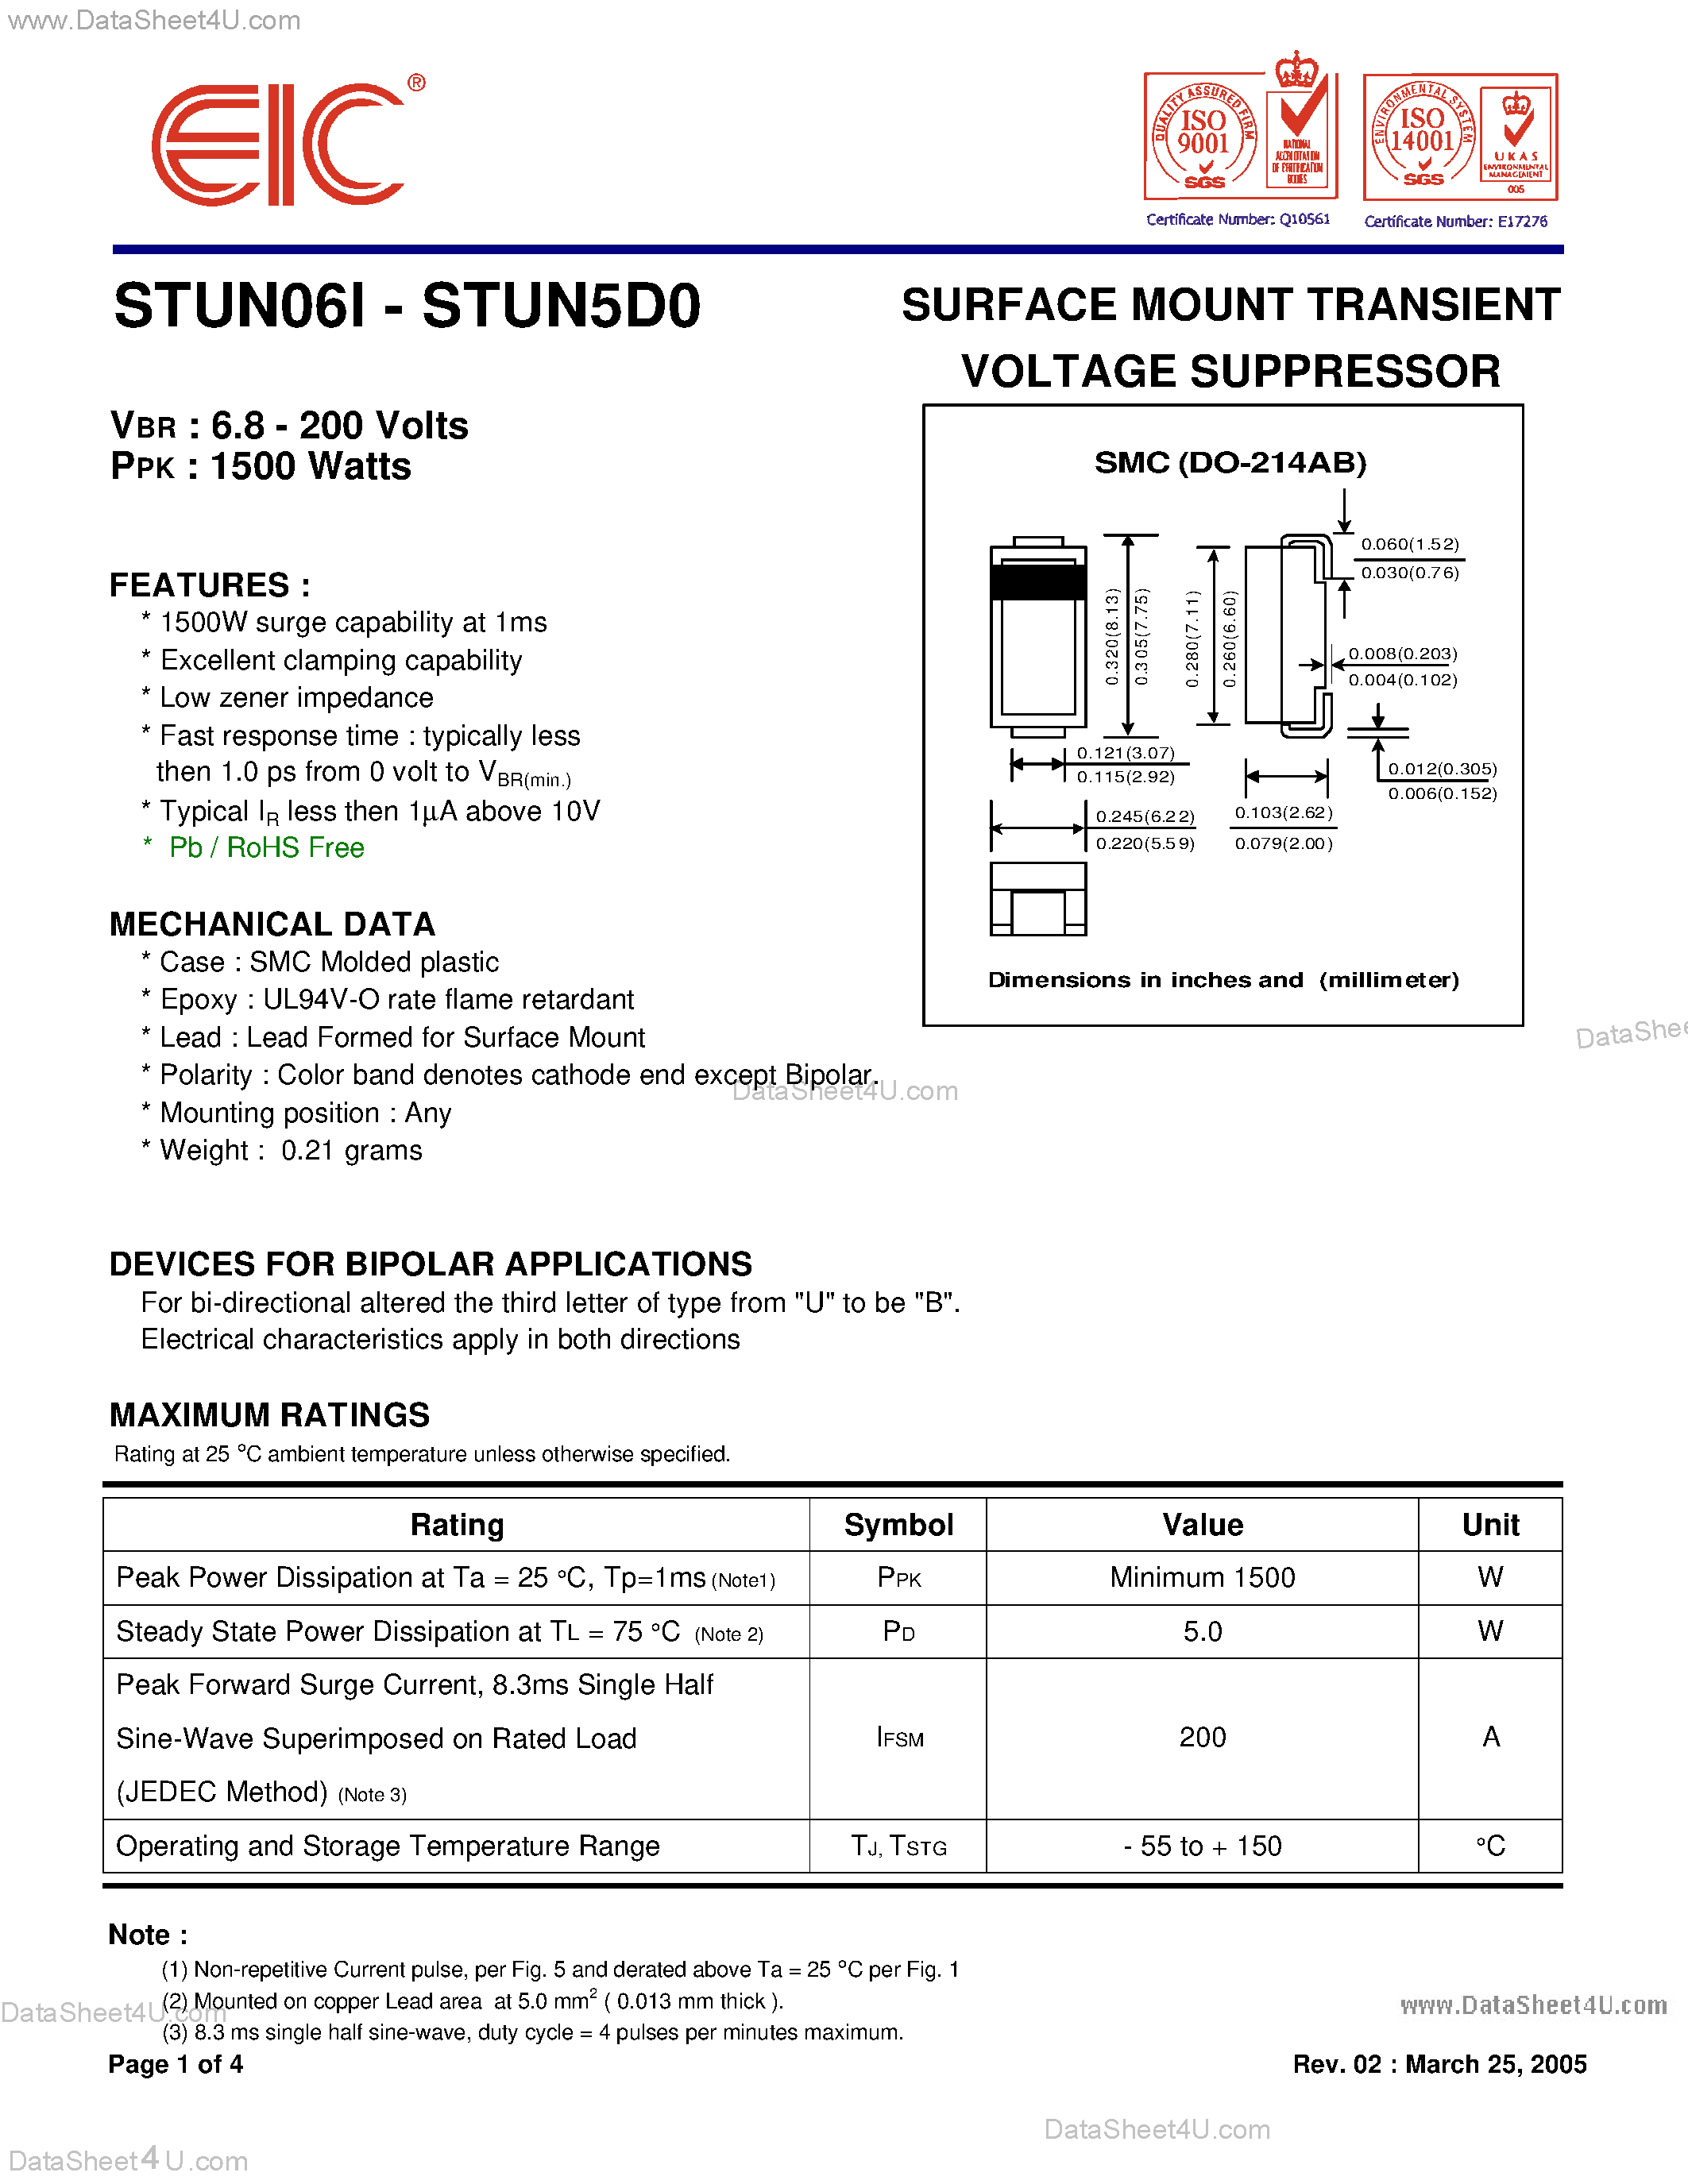 Даташит STUN061 - (STUN061 - STUN5D0) SURFACE MOUNT TRANSIENT VOLTAGE SUPPRESSOR страница 1